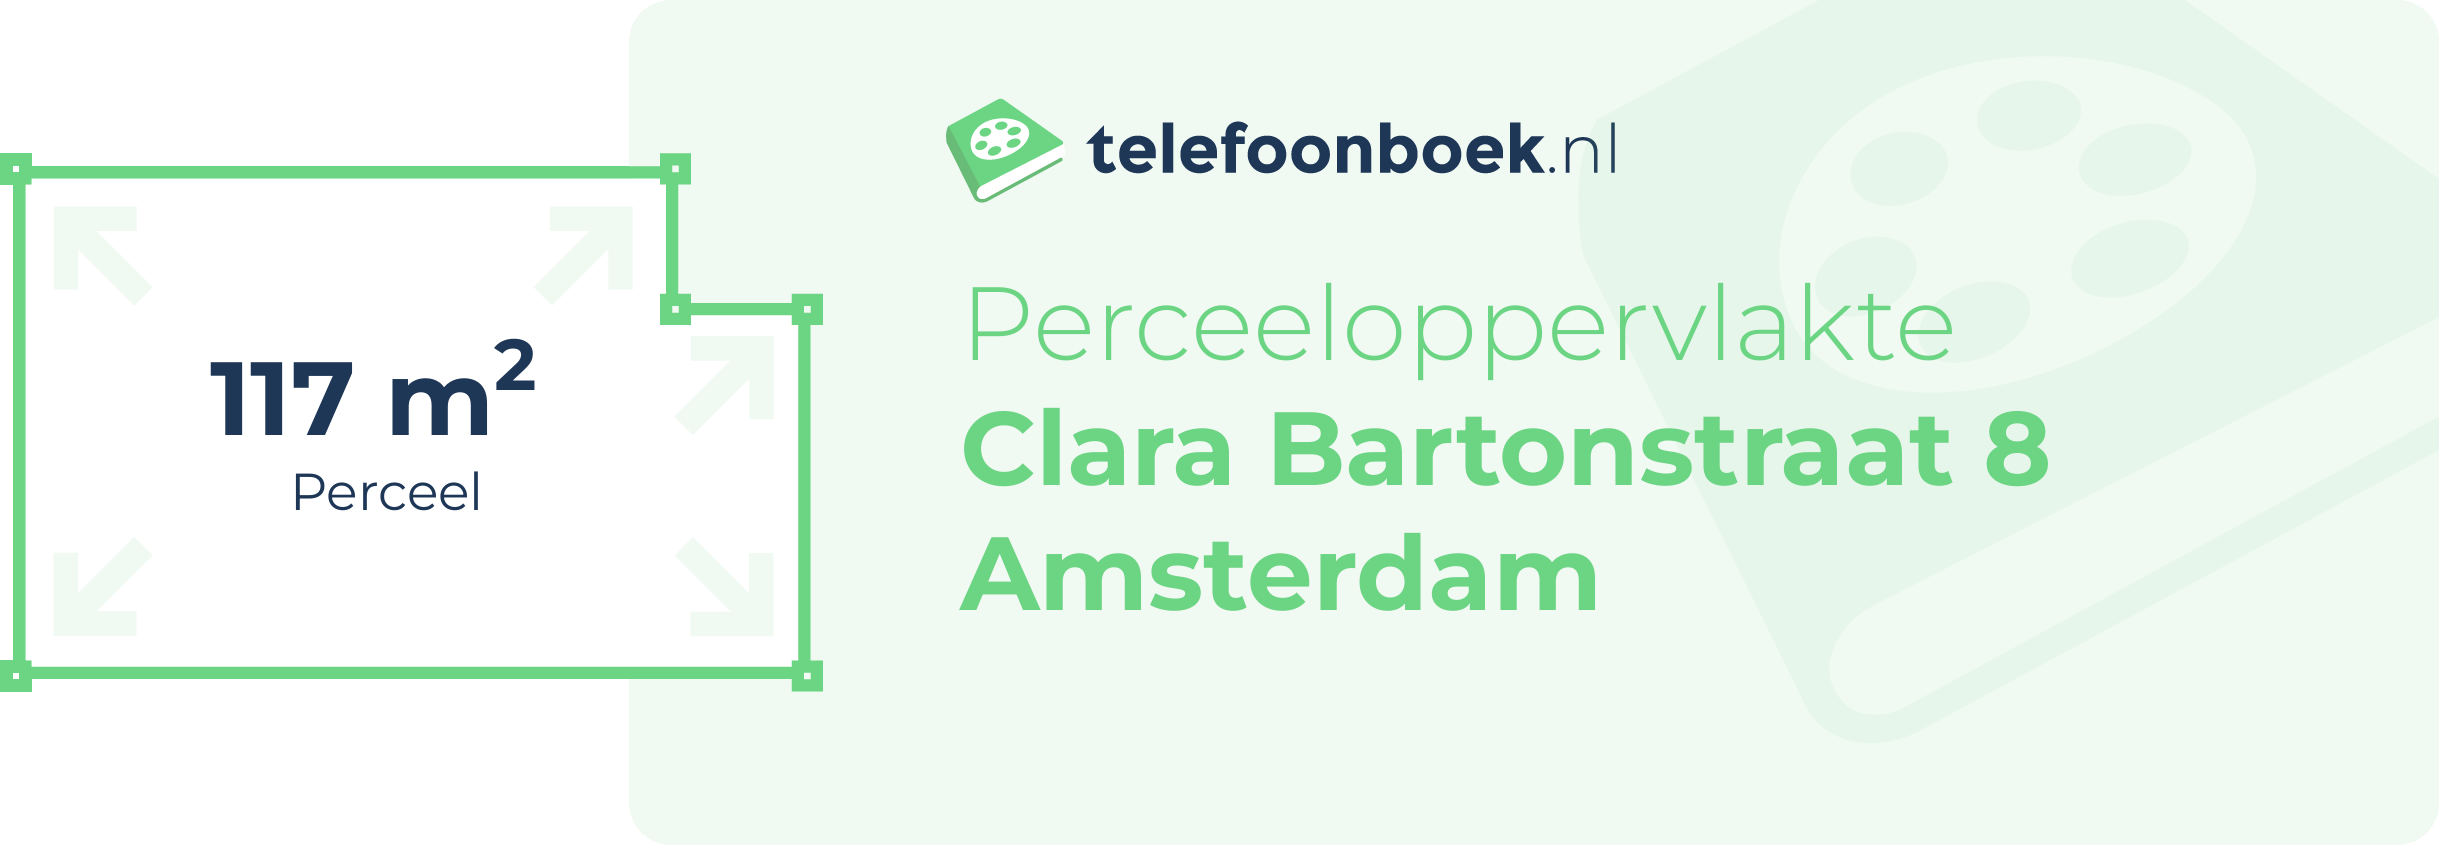 Perceeloppervlakte Clara Bartonstraat 8 Amsterdam